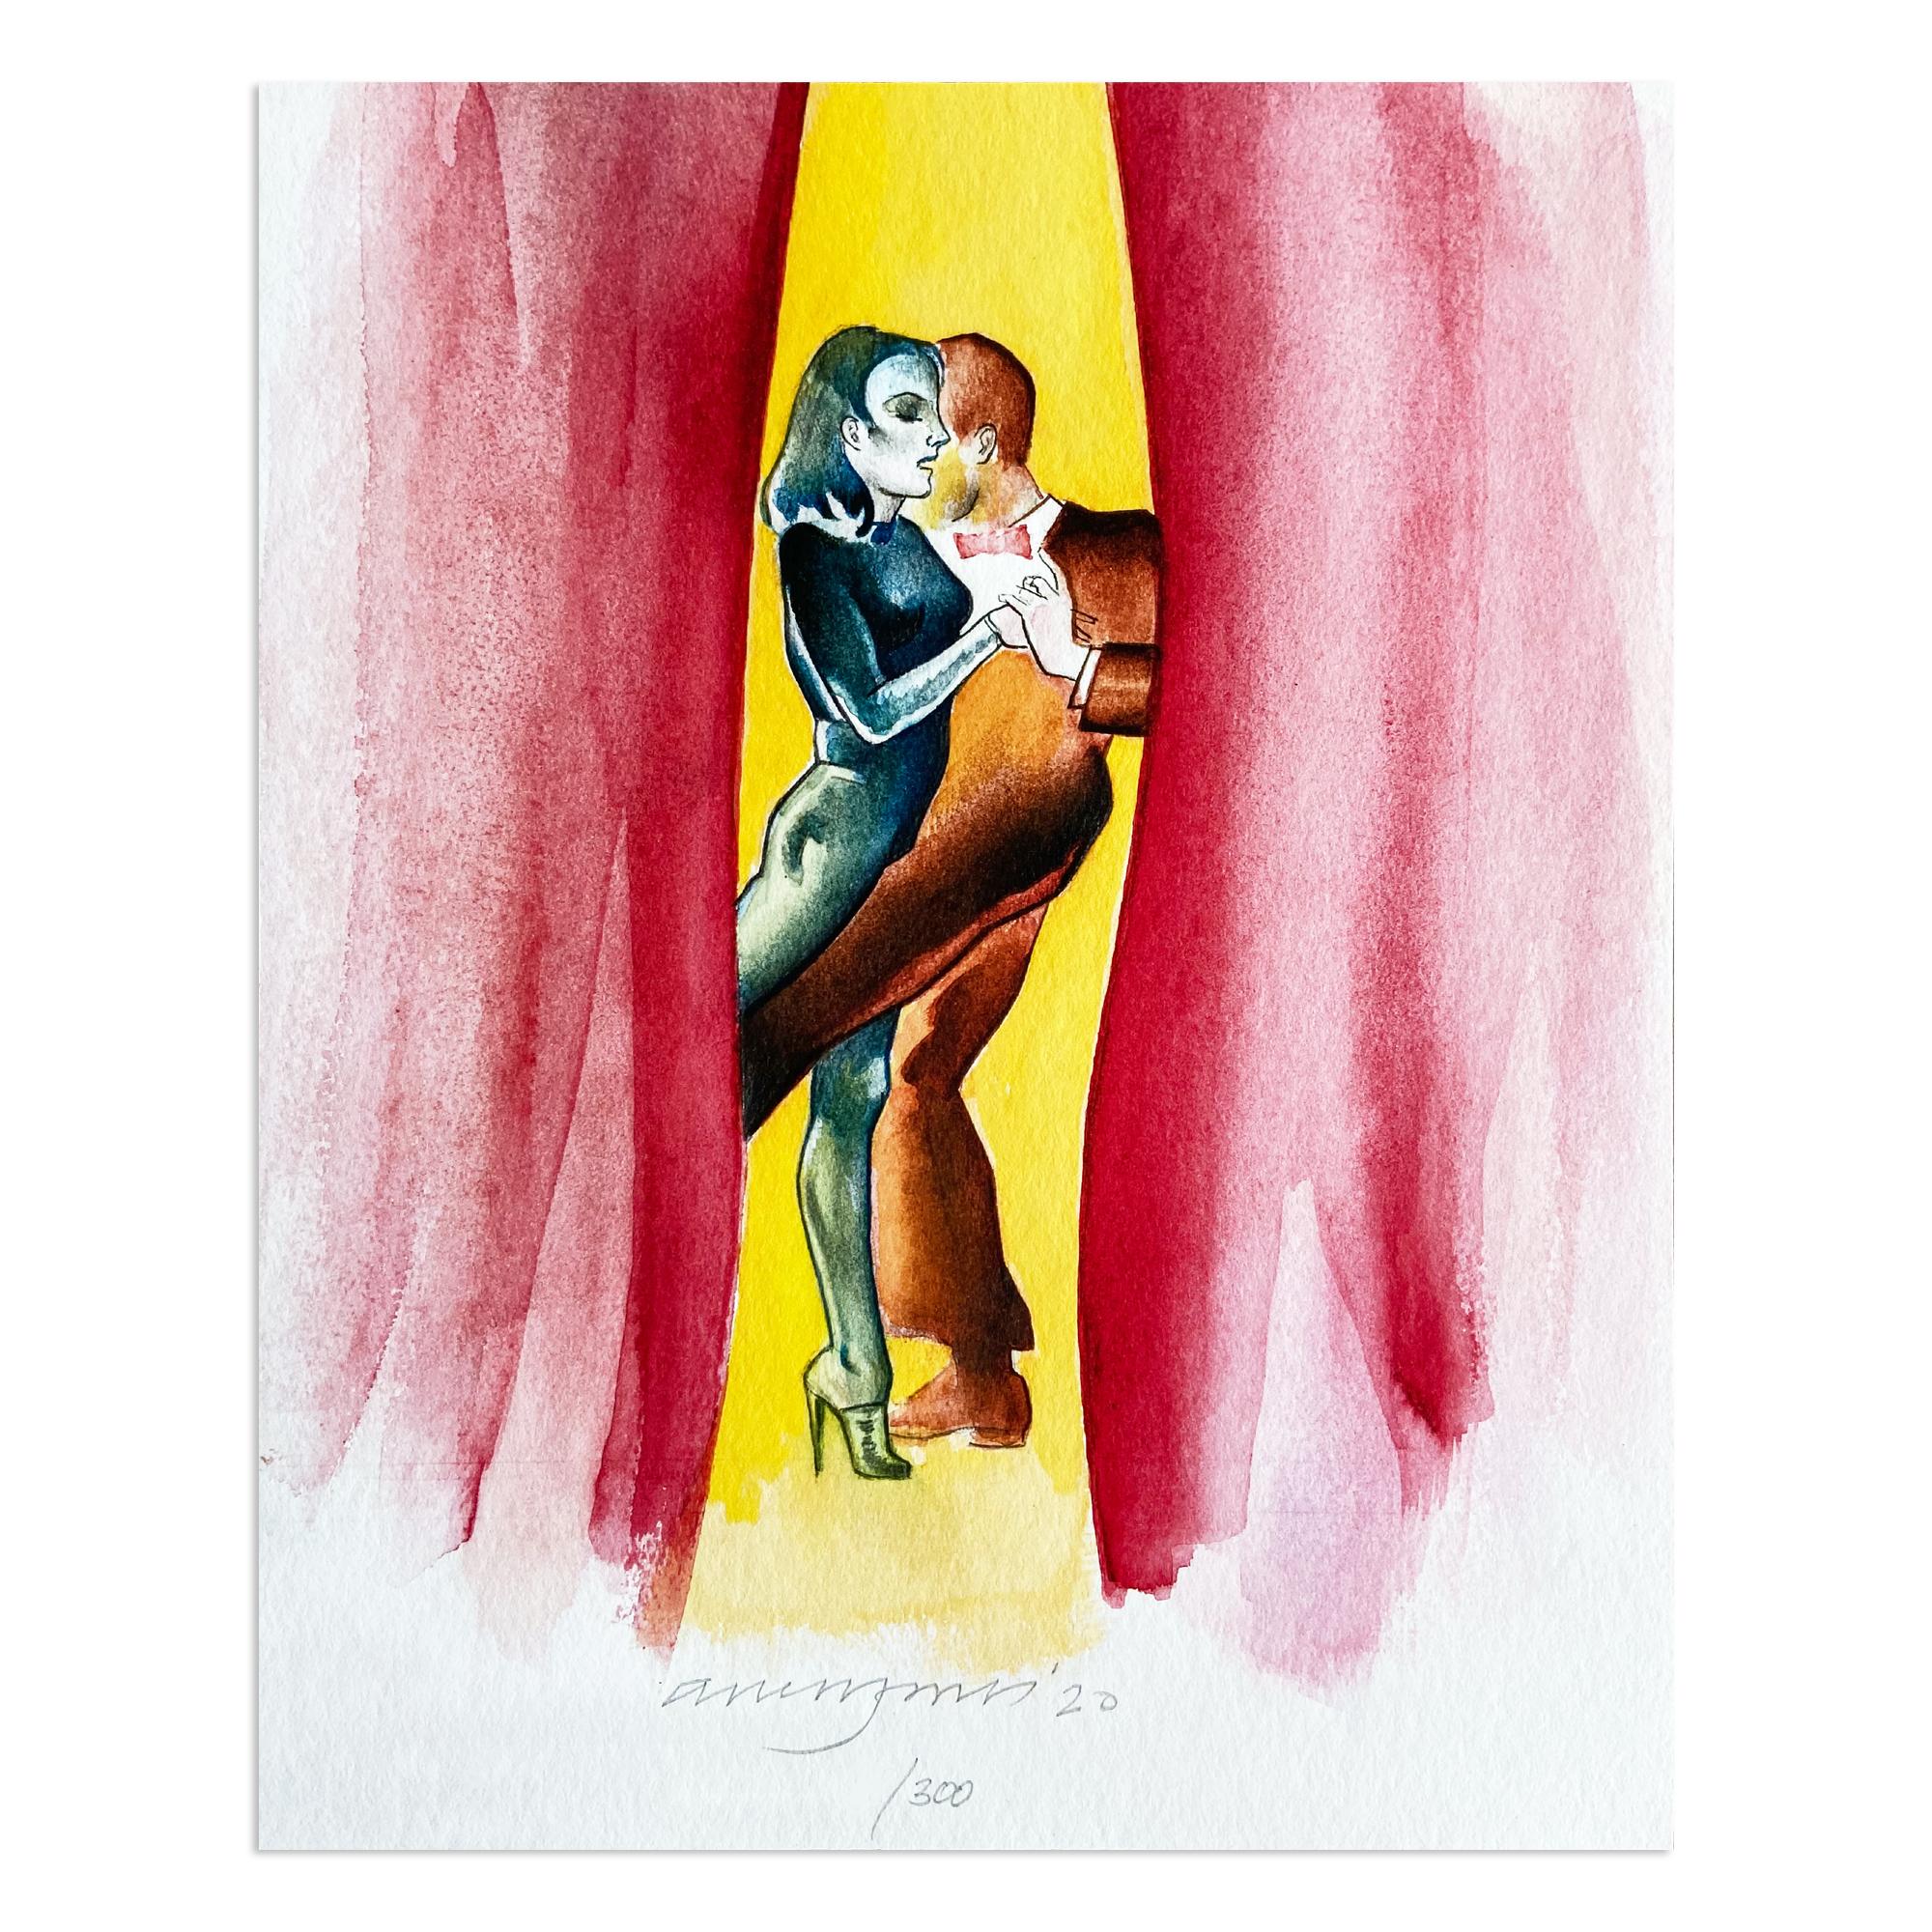 Allen Jones (britannique, né en 1937)
Performance in Print, 2020
Support : Fine-Art-Giclée-Print sur Hahnemühle Agave 290gsm
avec le catalogue raisonné des estampes 1996-2020 - Volume II
Dimensions : 26 x 20,8 cm : 26 x 20,8 cm
Edition de 300